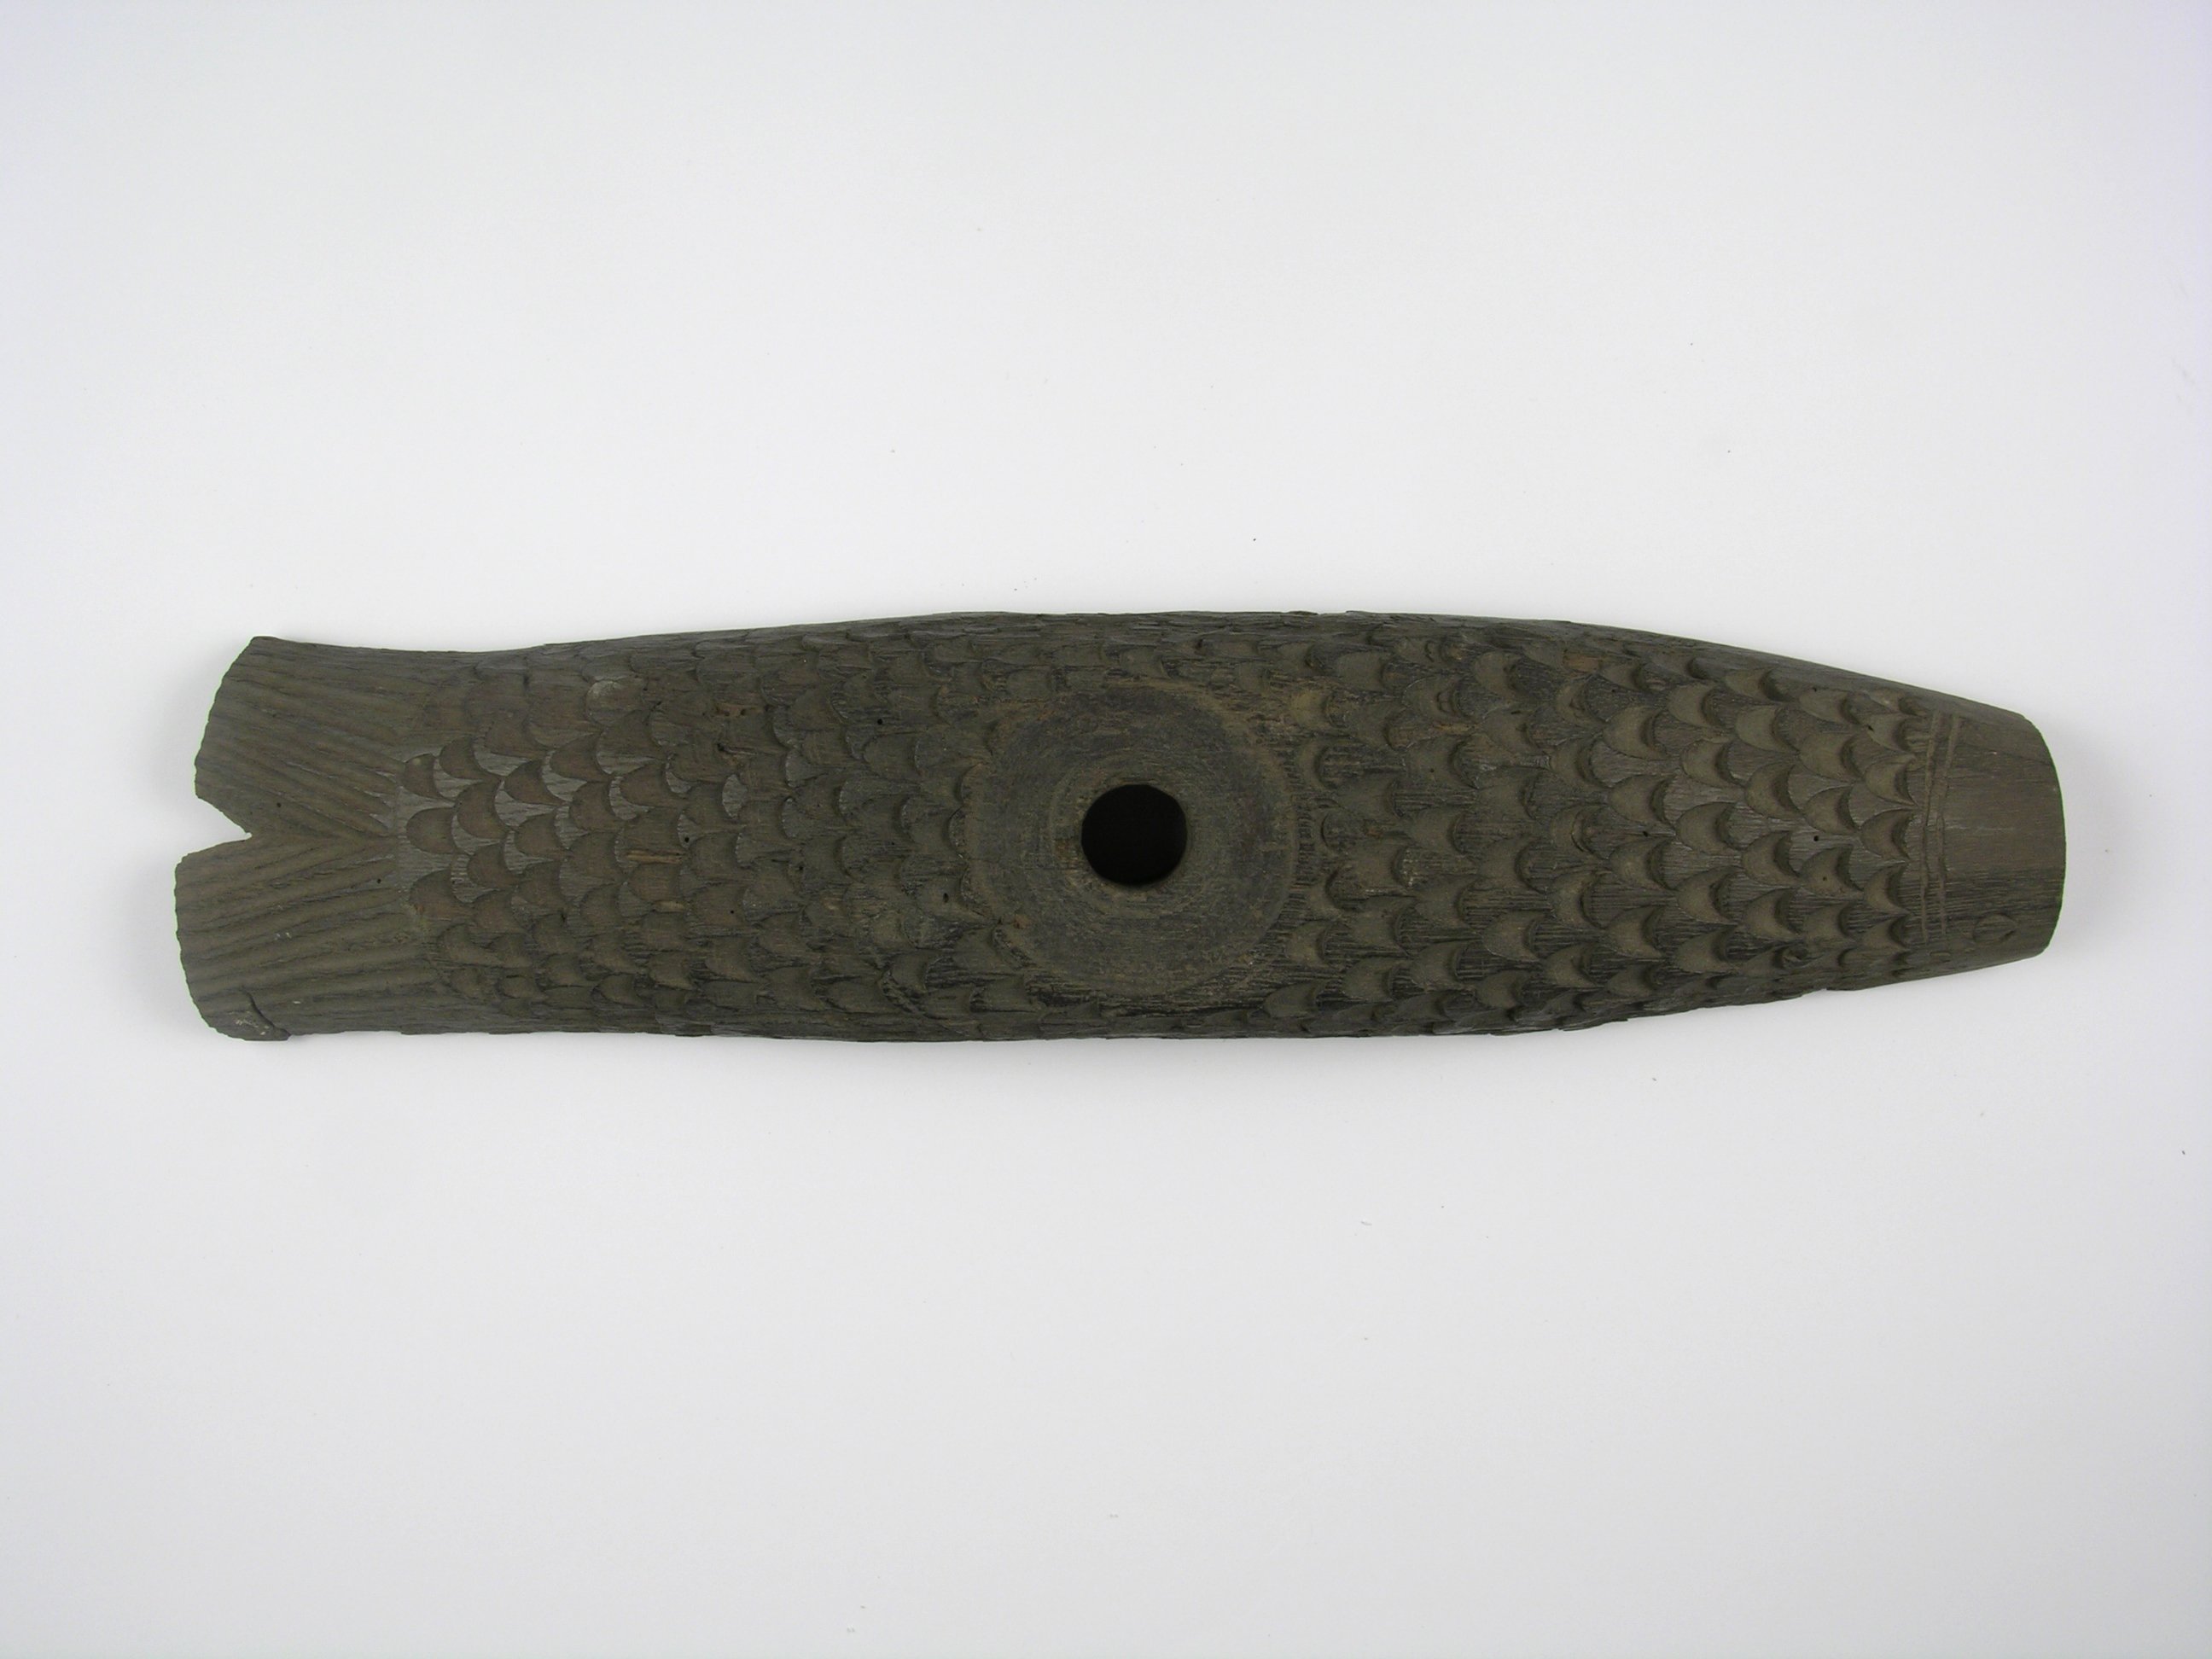 Fassriegel in Form eines Fisches (Historisches Museum der Pfalz - Speyer CC BY)